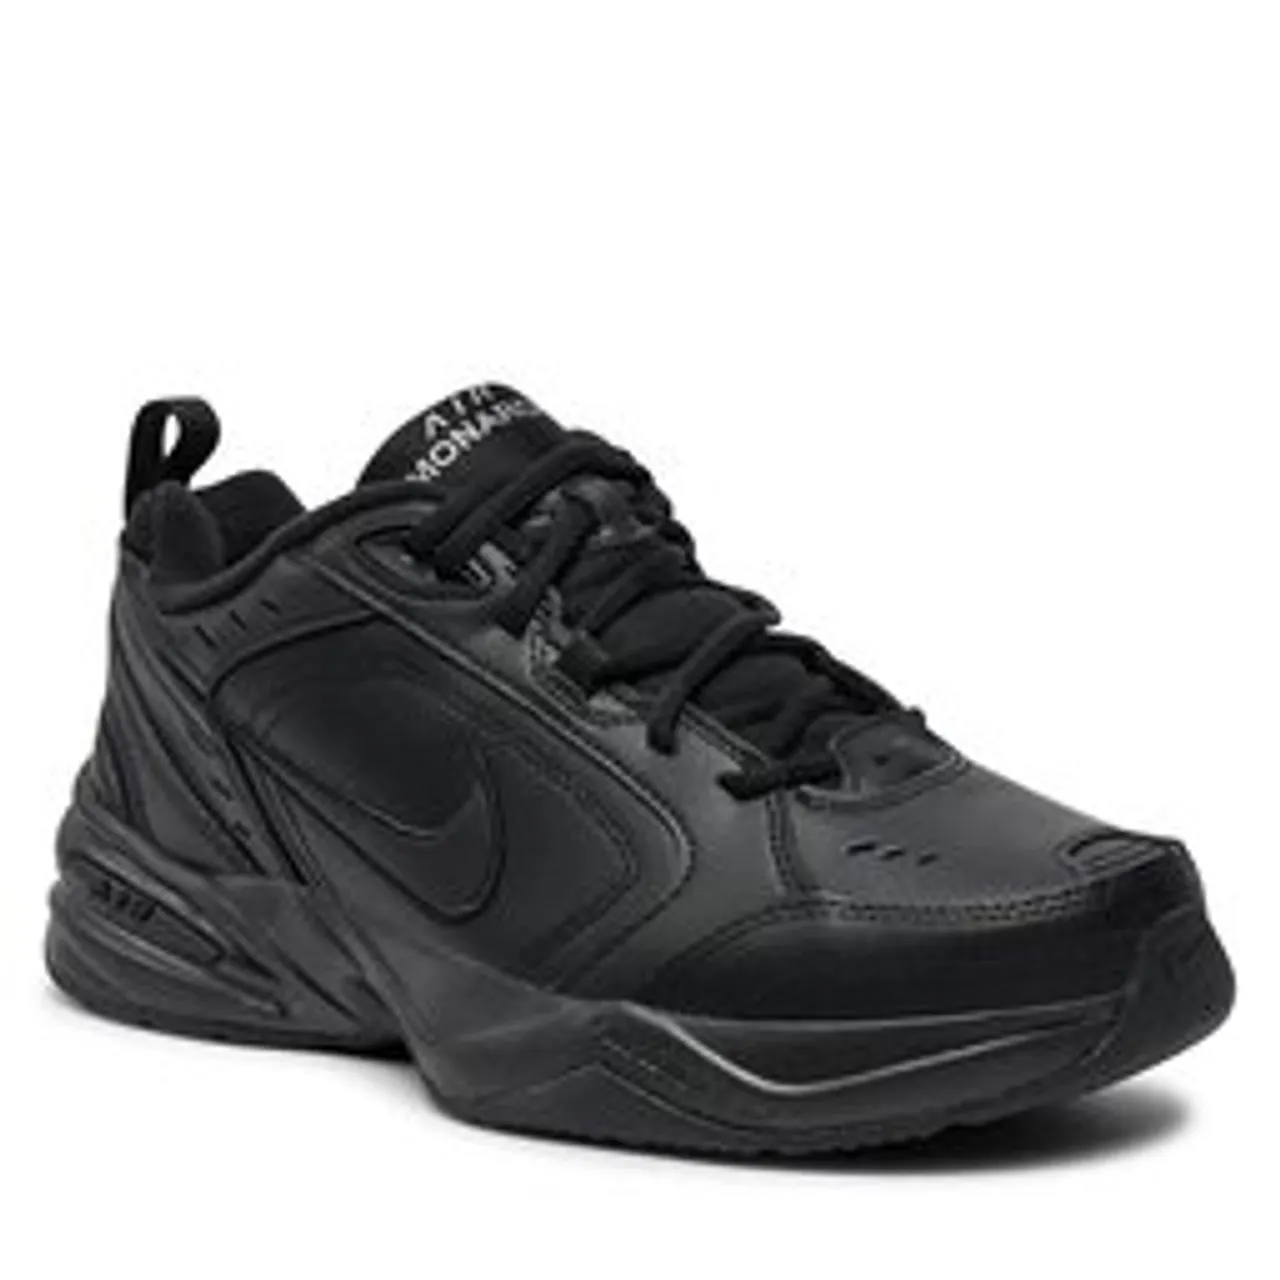 Schuhe Nike Air Monarch IV 415445 001 Black/Black